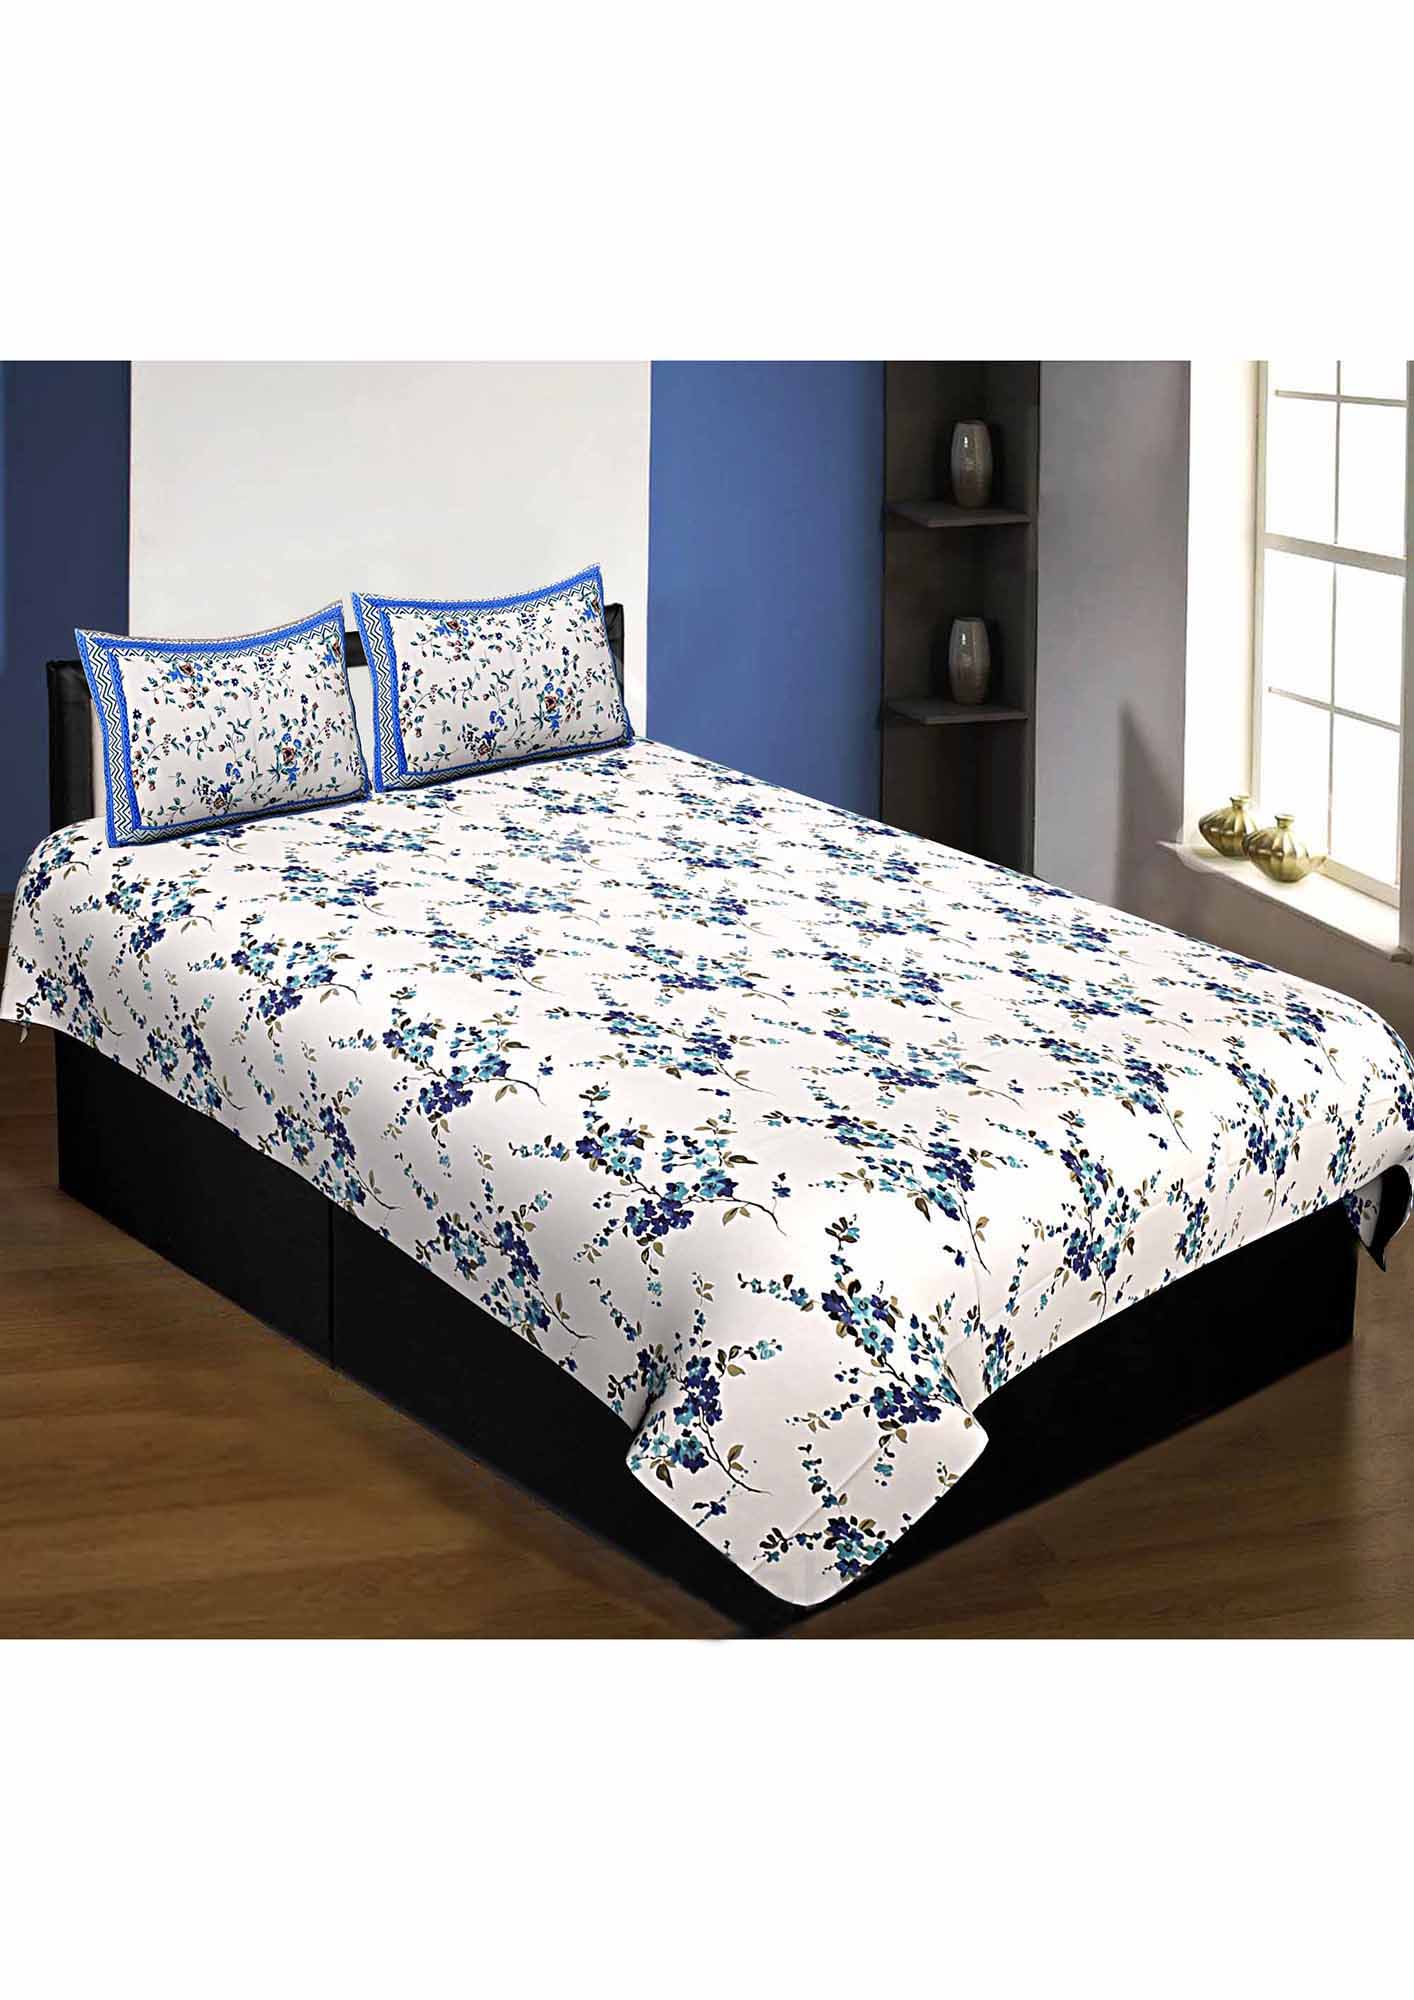 Pure Cotton Premium 240 TC Single Bedsheet in blue motif floral print taxable